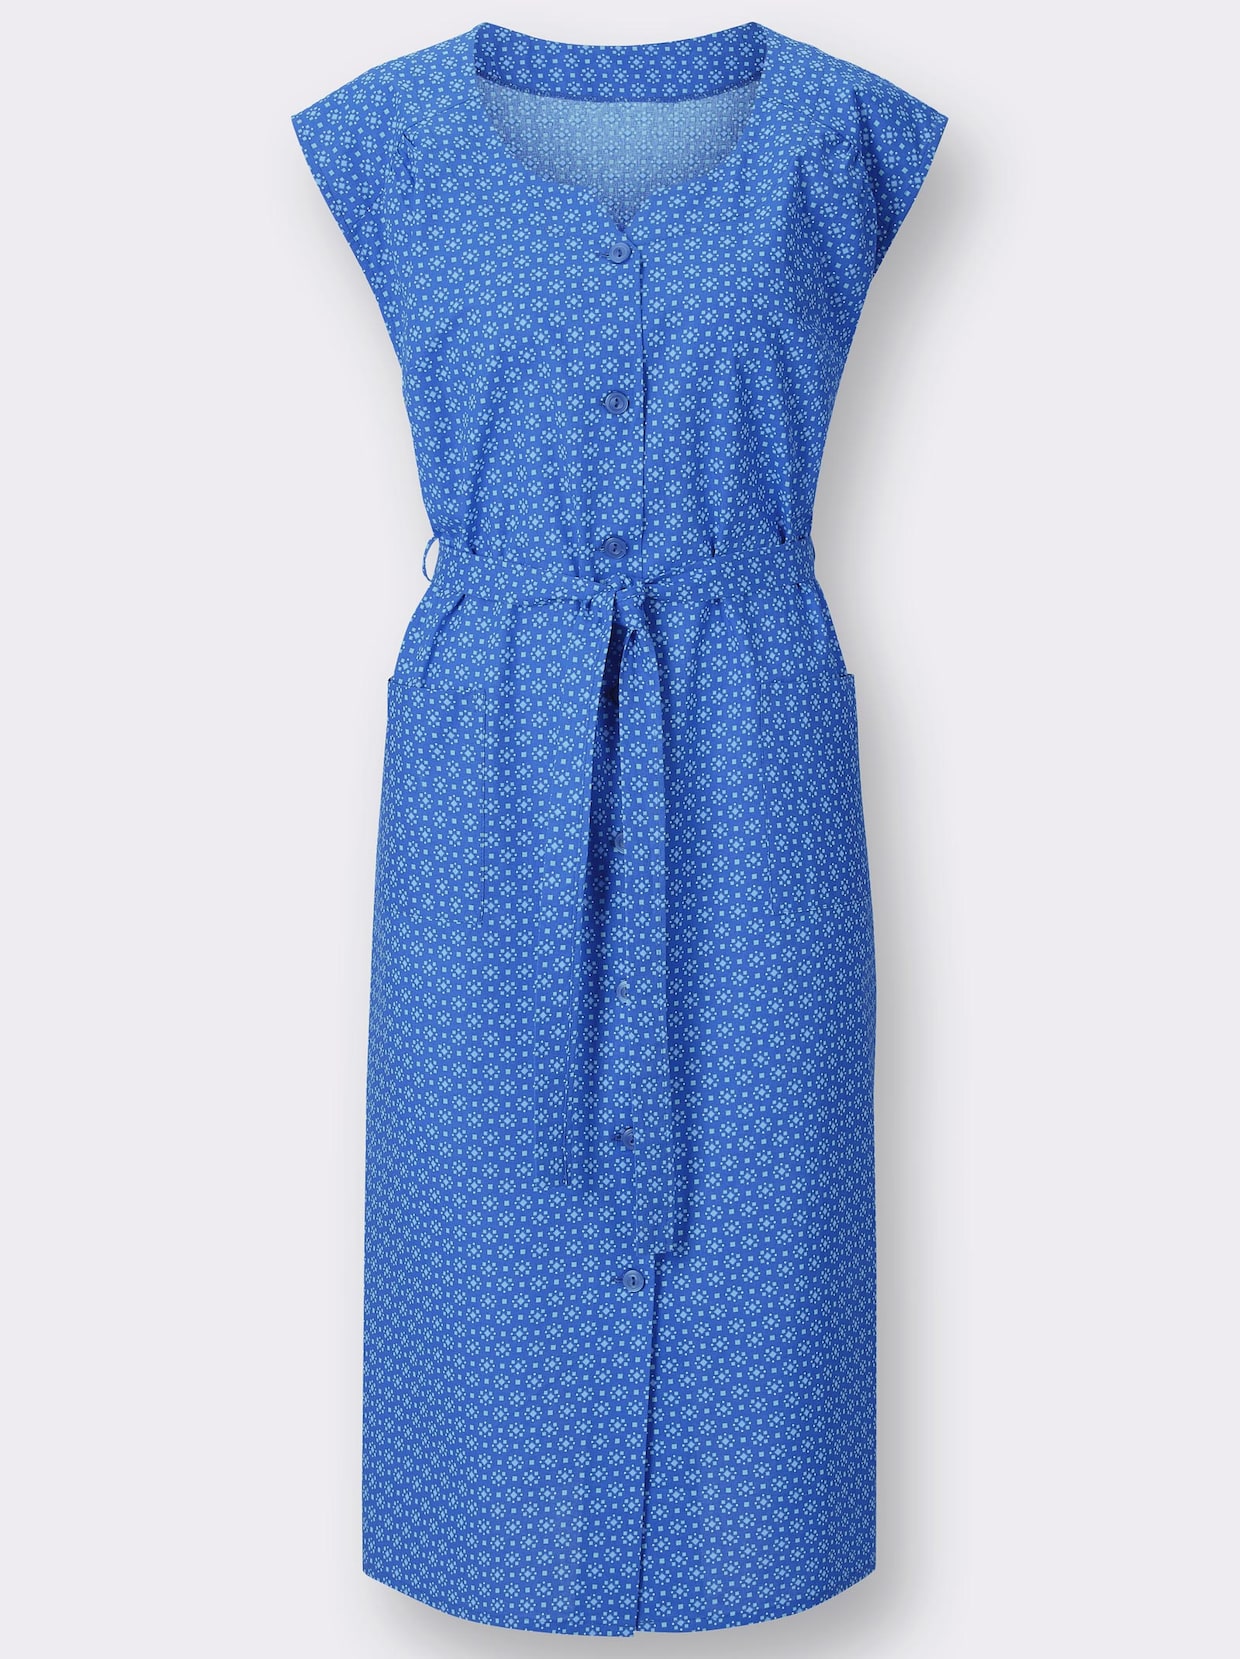 Kleiderschürze - blau-bedruckt